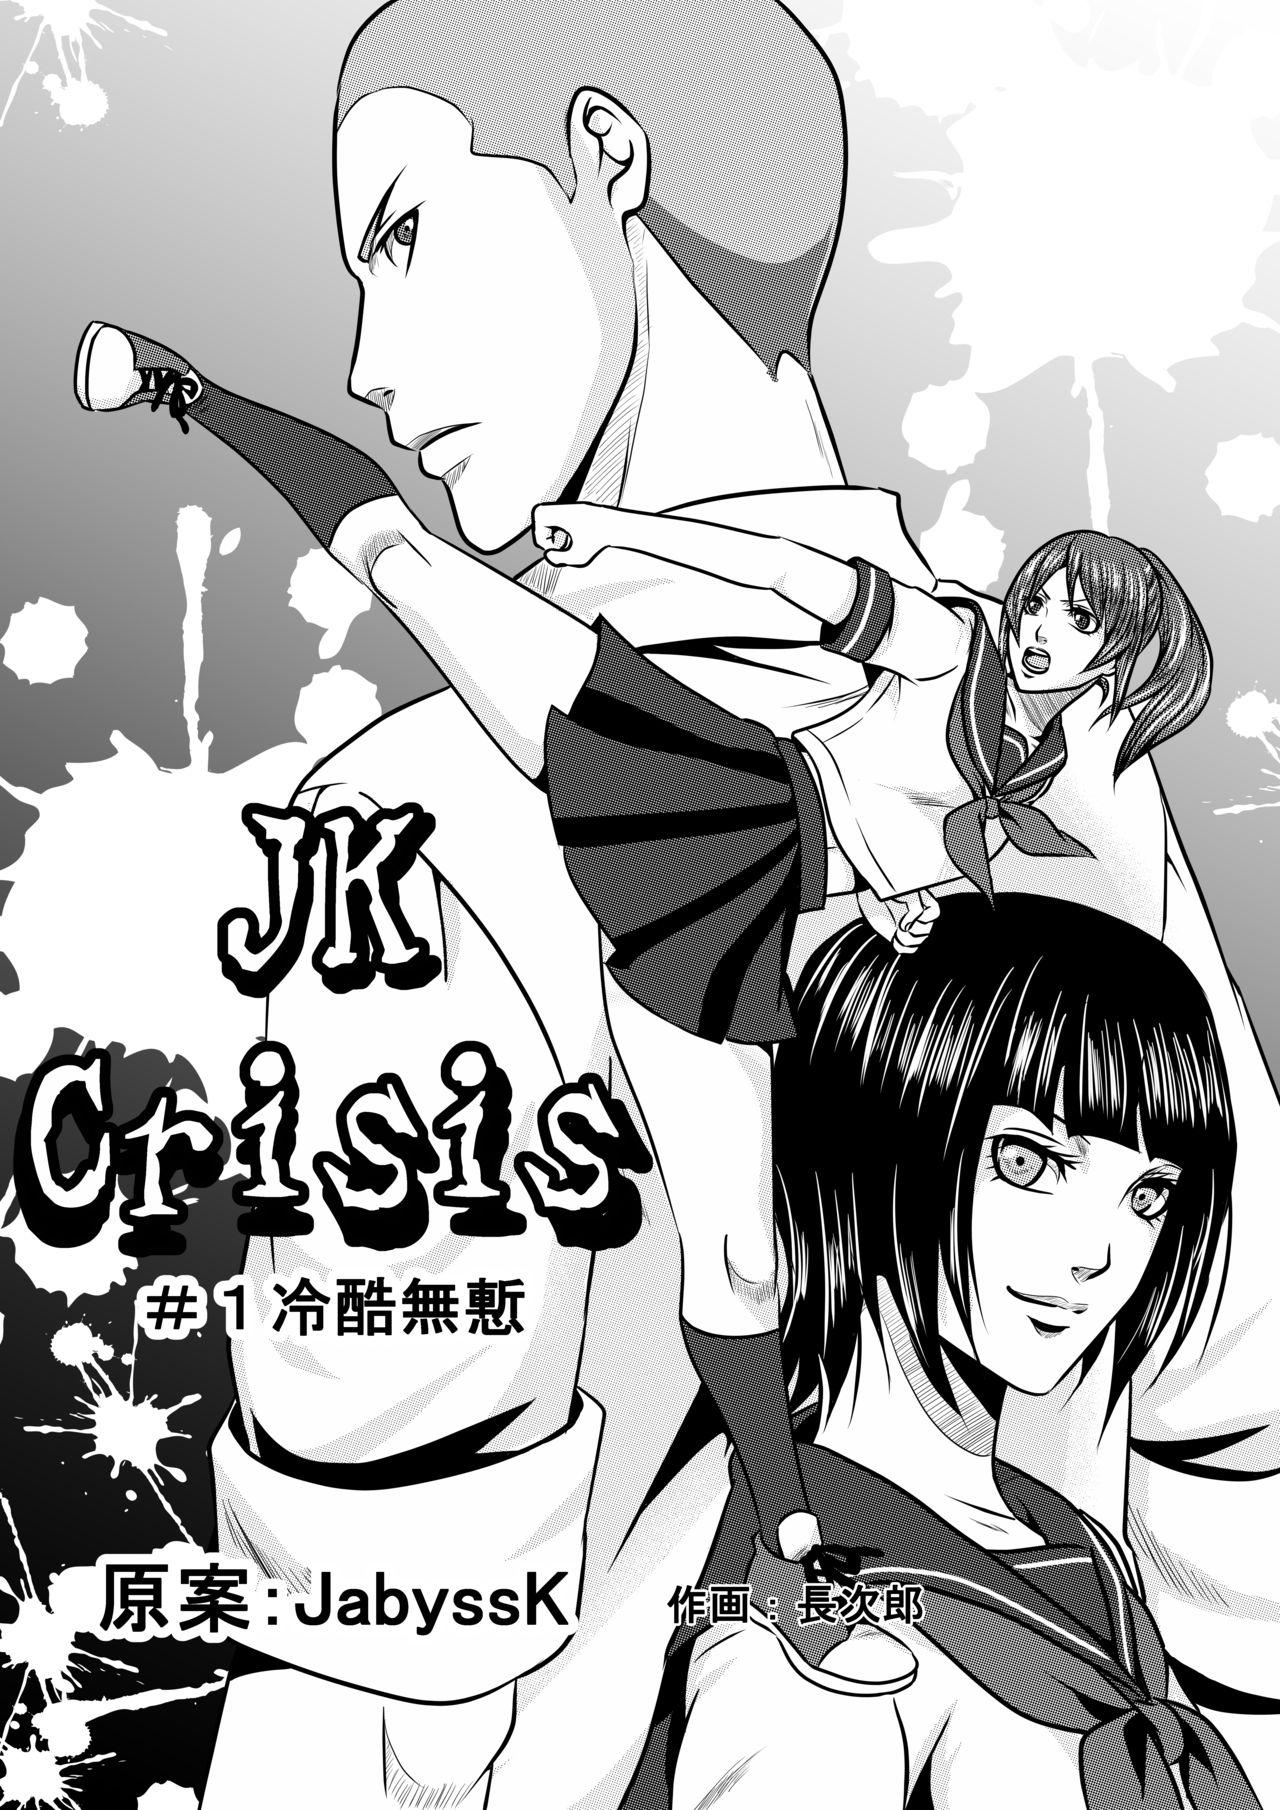 JK Crisis #1_ Cold and Cruel + JK Crisis #2_ Athna + JK Crisis 3 0